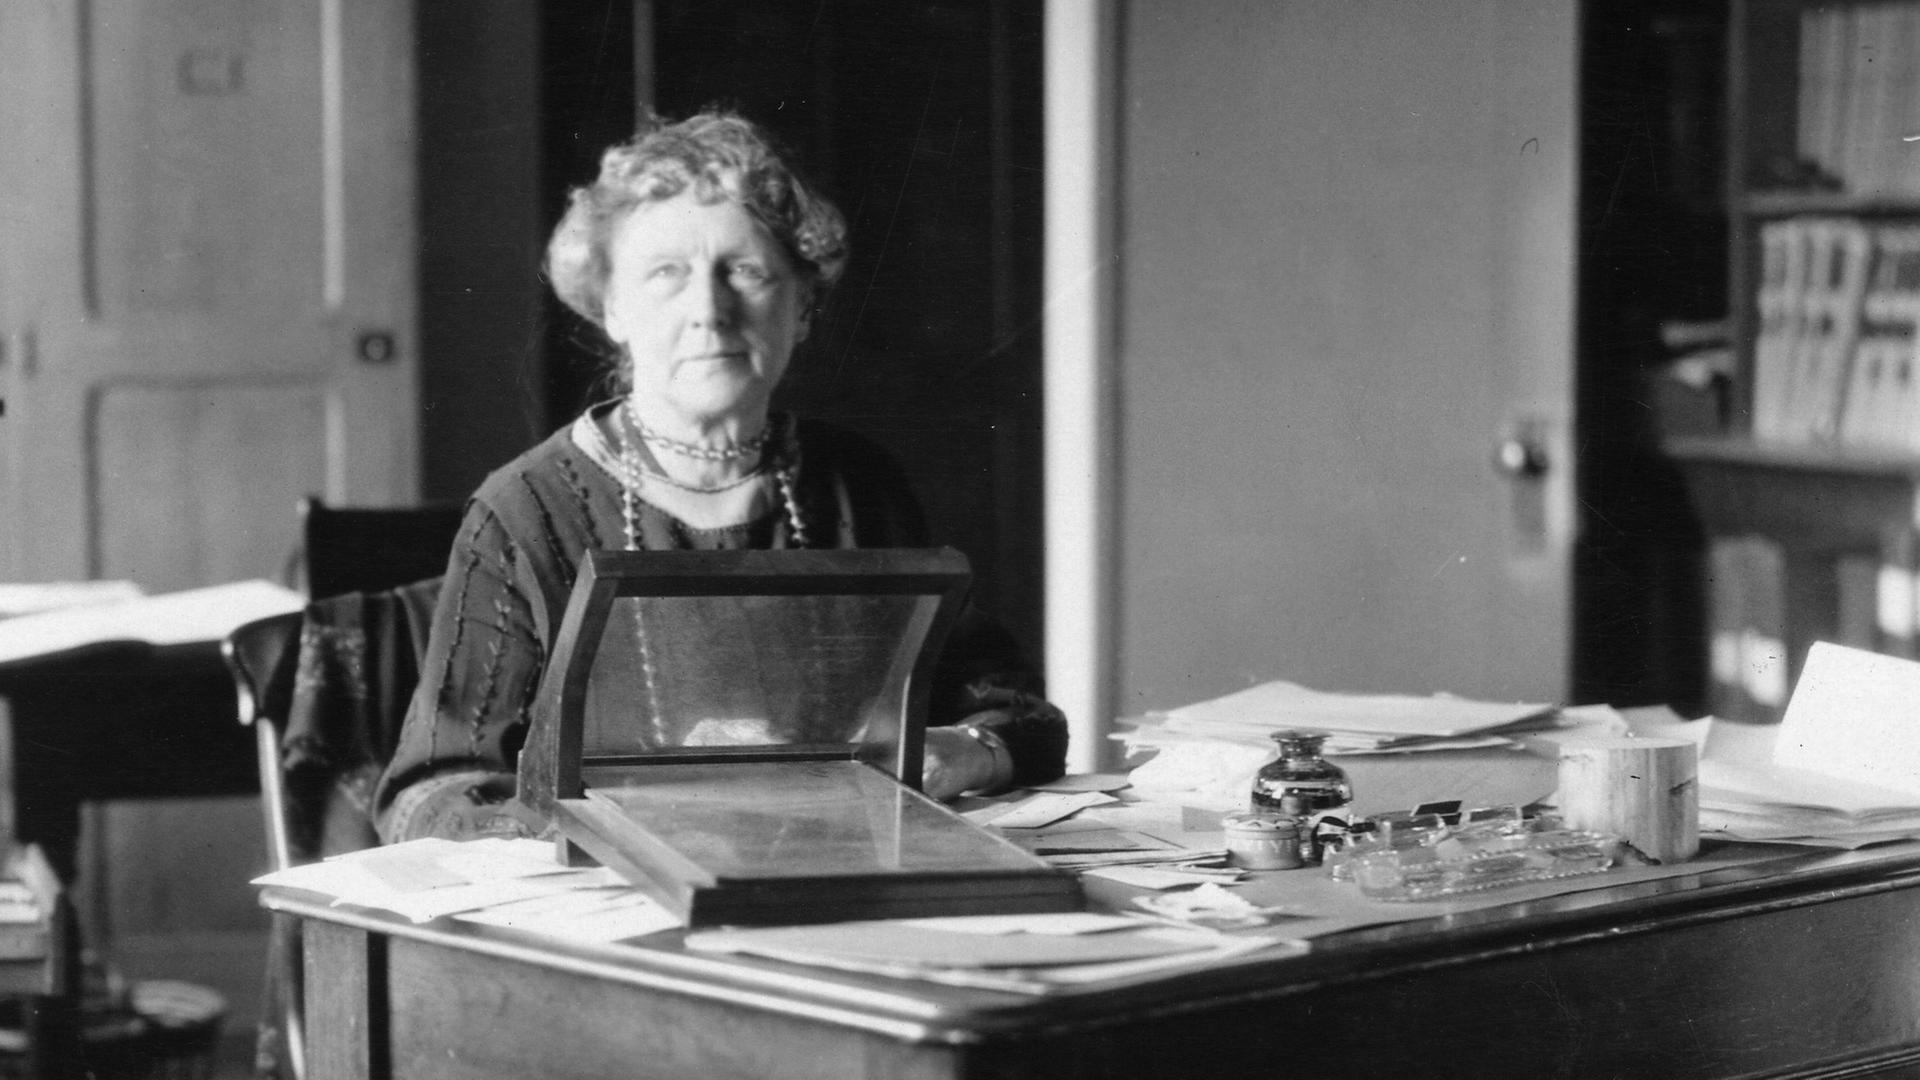 Die große Astronomin Annie Jump Cannon (1863-1941) begründete die physikalische Erforschung der Sterne. Auf einer Schwarz-Weiß-Aufnahme sitzt sie als ältere Dame an einem Tisch mit Instrumenten.